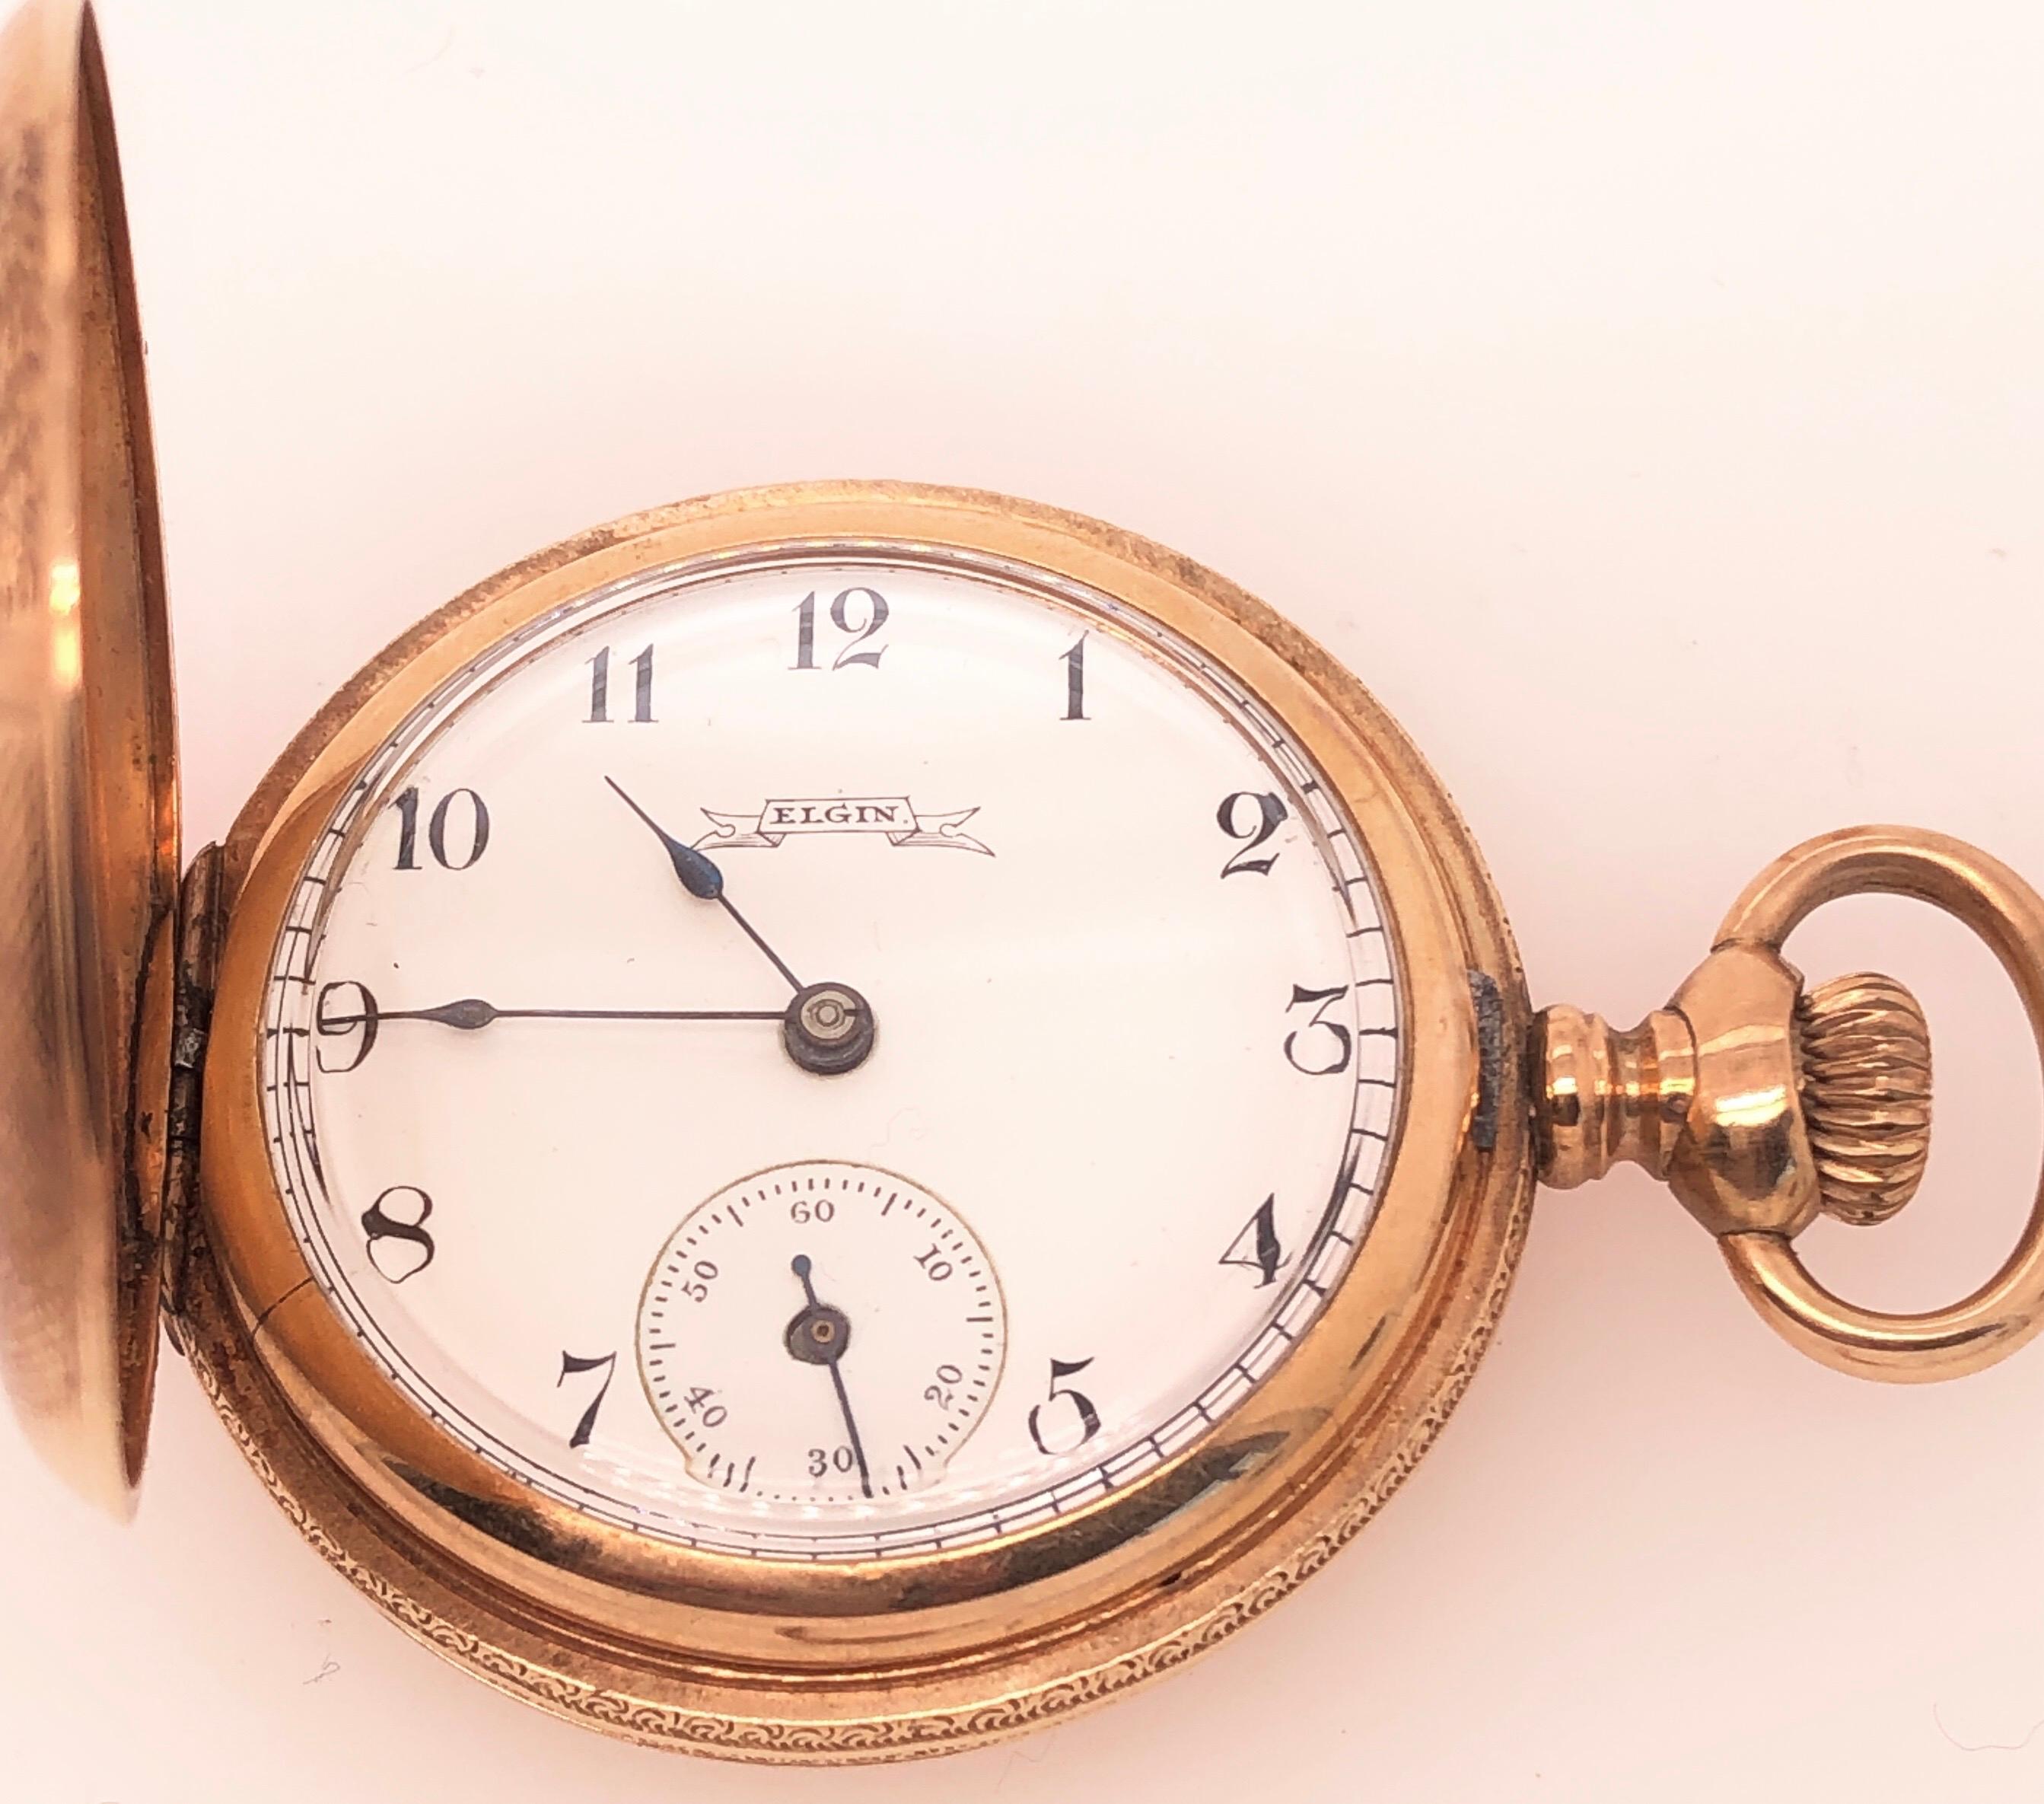 Antike Elgin Taschenuhr 14K Gelbgold Taschenuhr, Vorder-und Rückseite des Gehäuses sind aufwendig graviert. Weißes Emaille-Zifferblatt mit schwarzen arabischen Ziffern. Dies ist eine außergewöhnlich gut erhaltene Vintage-Taschenuhr. 34 mm